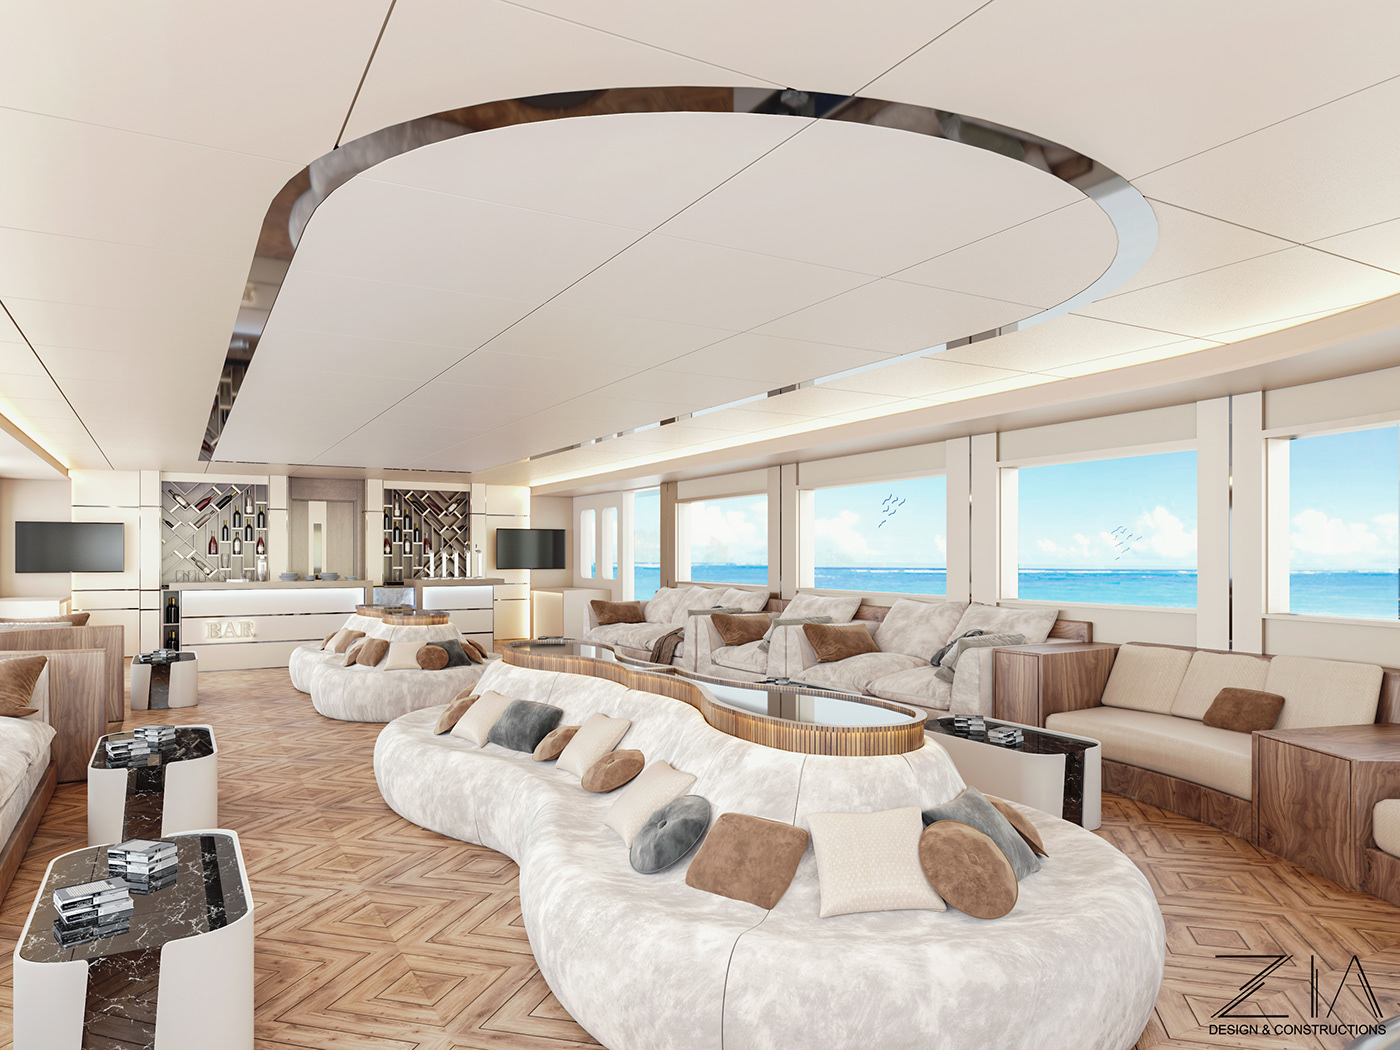 3ds architecture hurghada interior design  Render salondesign visualization yacht Yacht Design yacht salon design